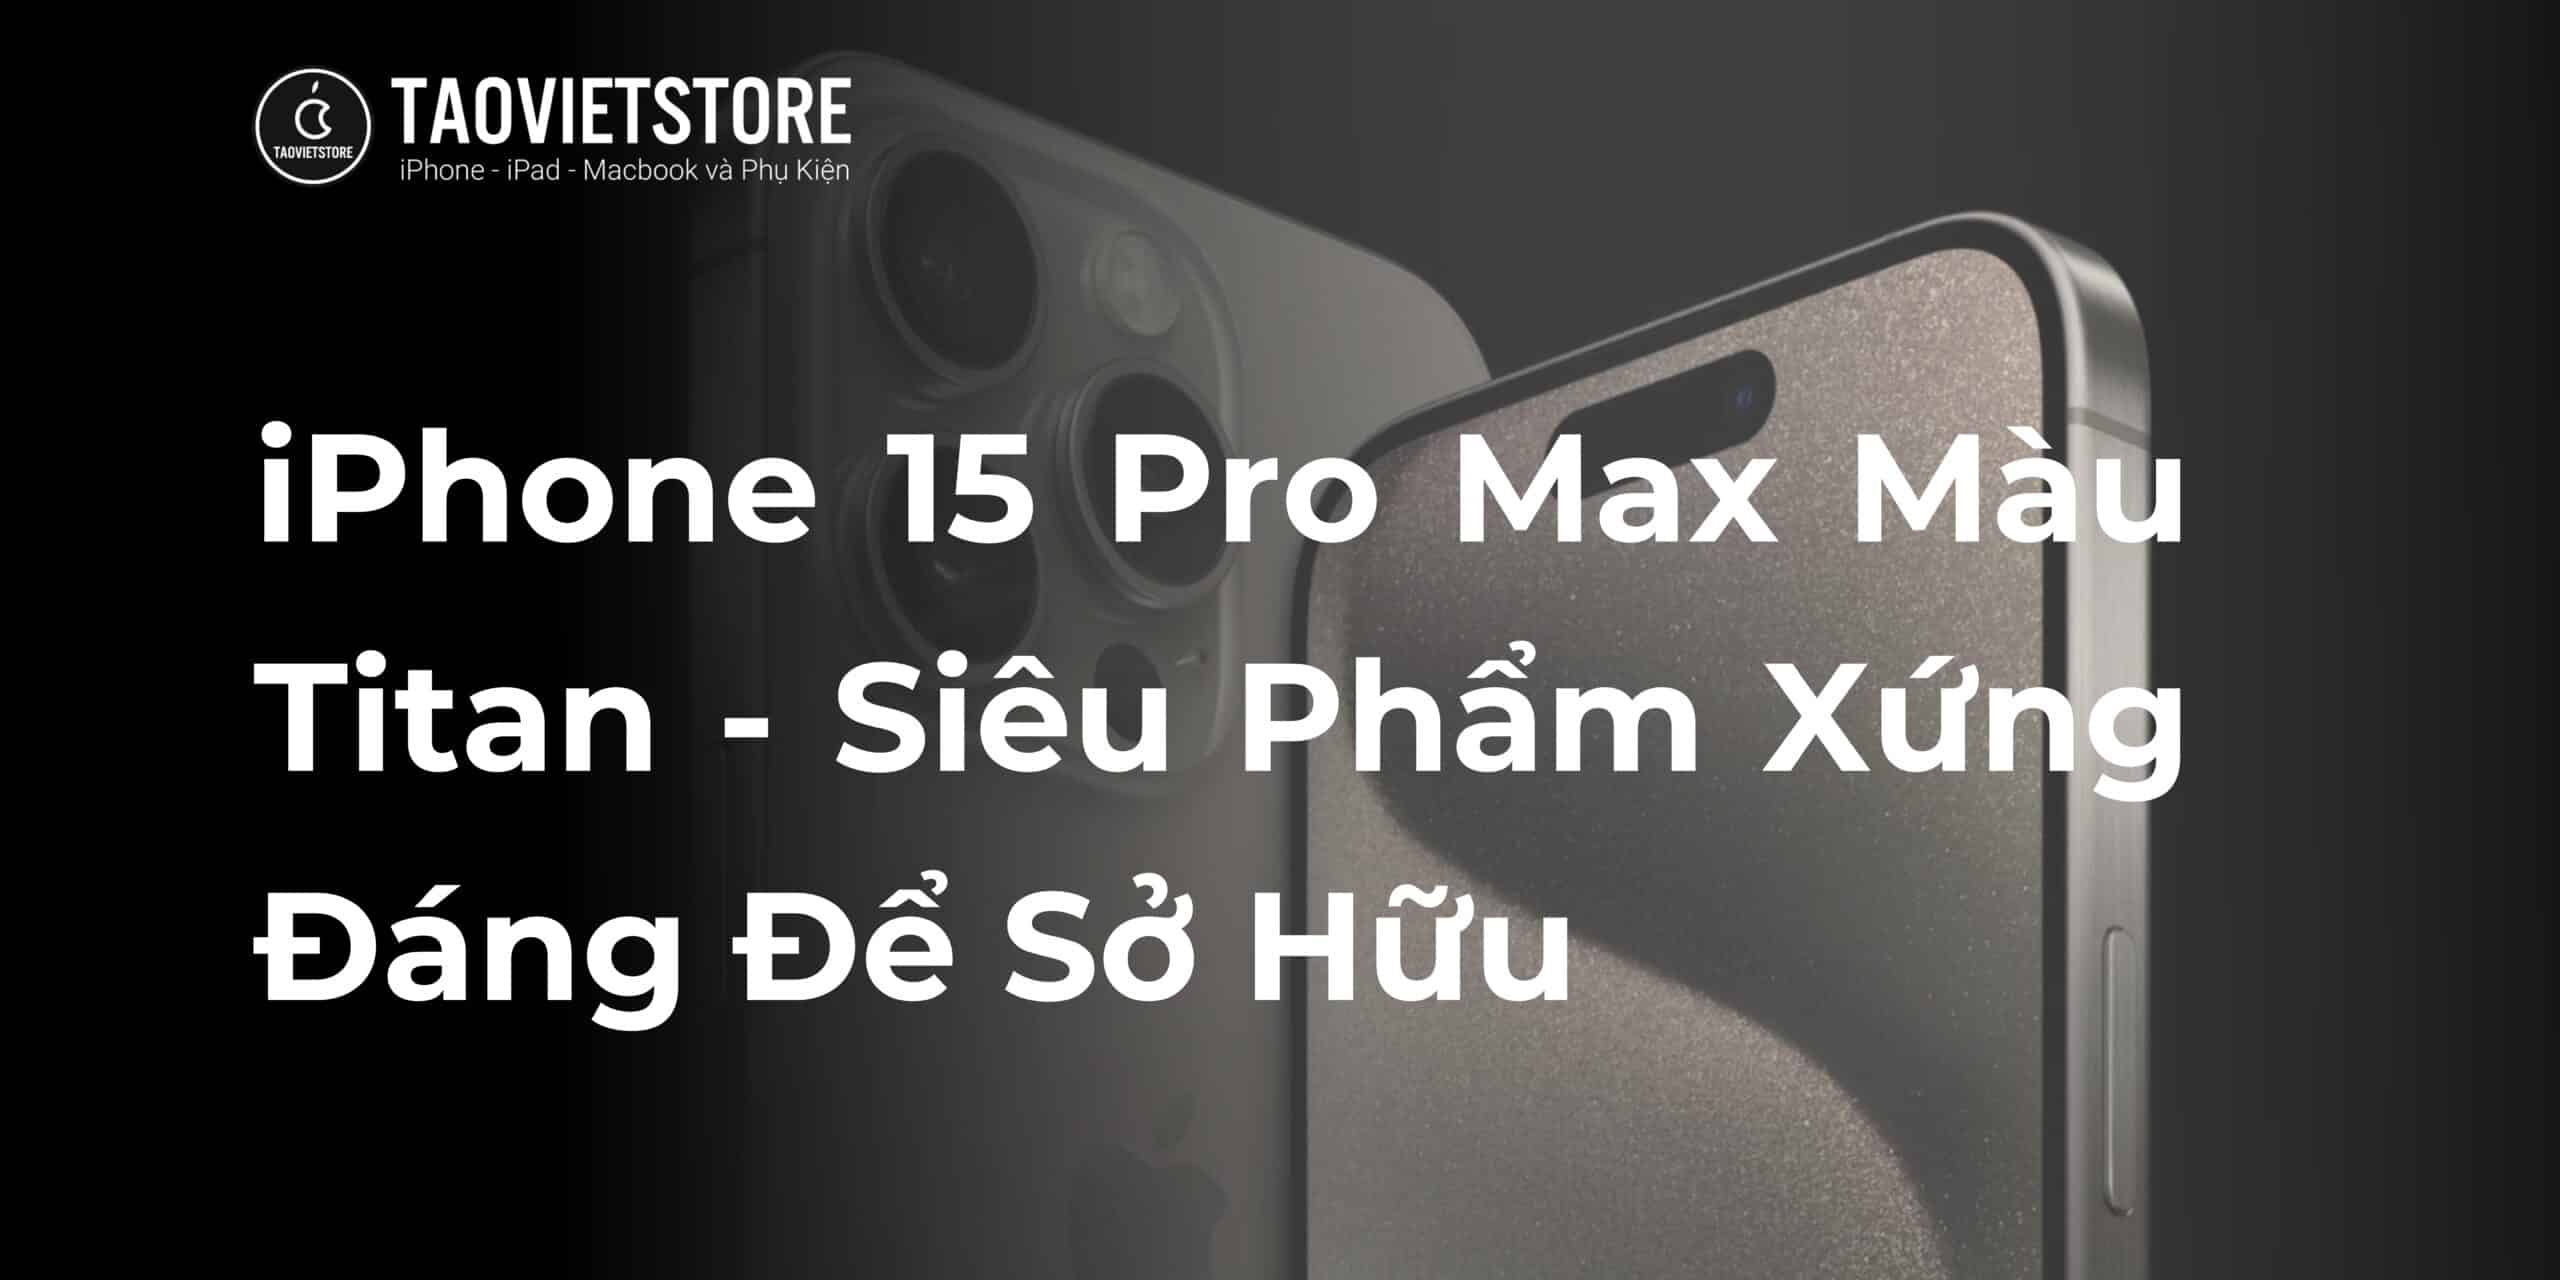 iPhone 15 Pro Max Màu Titan - Siêu Phẩm Xứng Đáng Để Sở Hữu